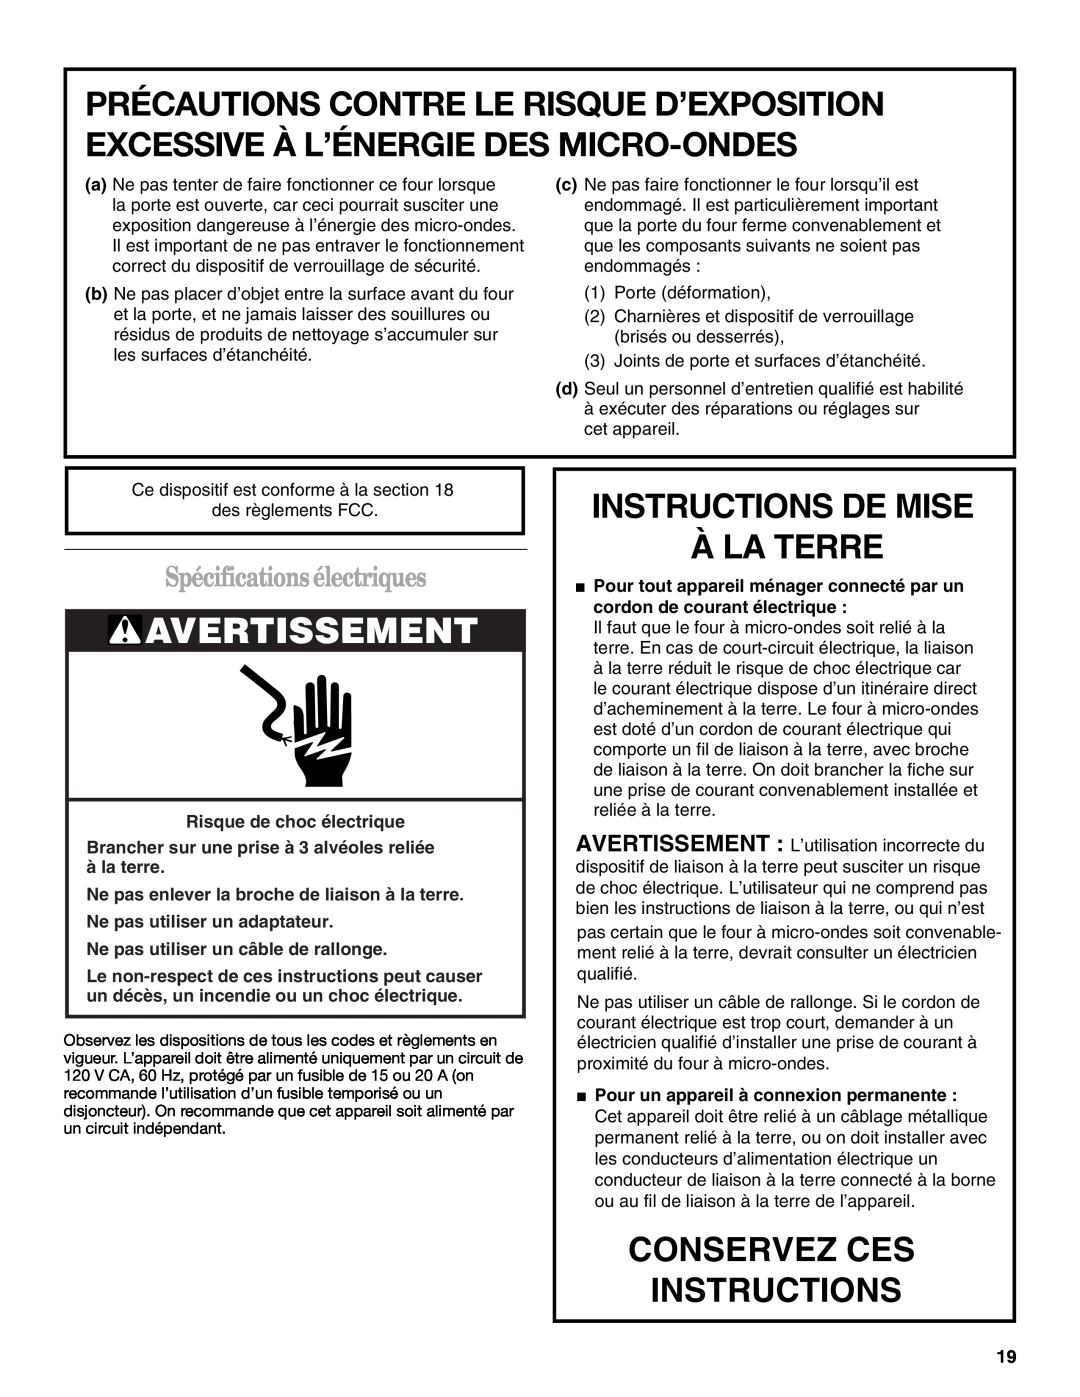 United Appliances YMH1150XM manual Avertissement, Instructions De Mise À La Terre, Conservez Ces Instructions 